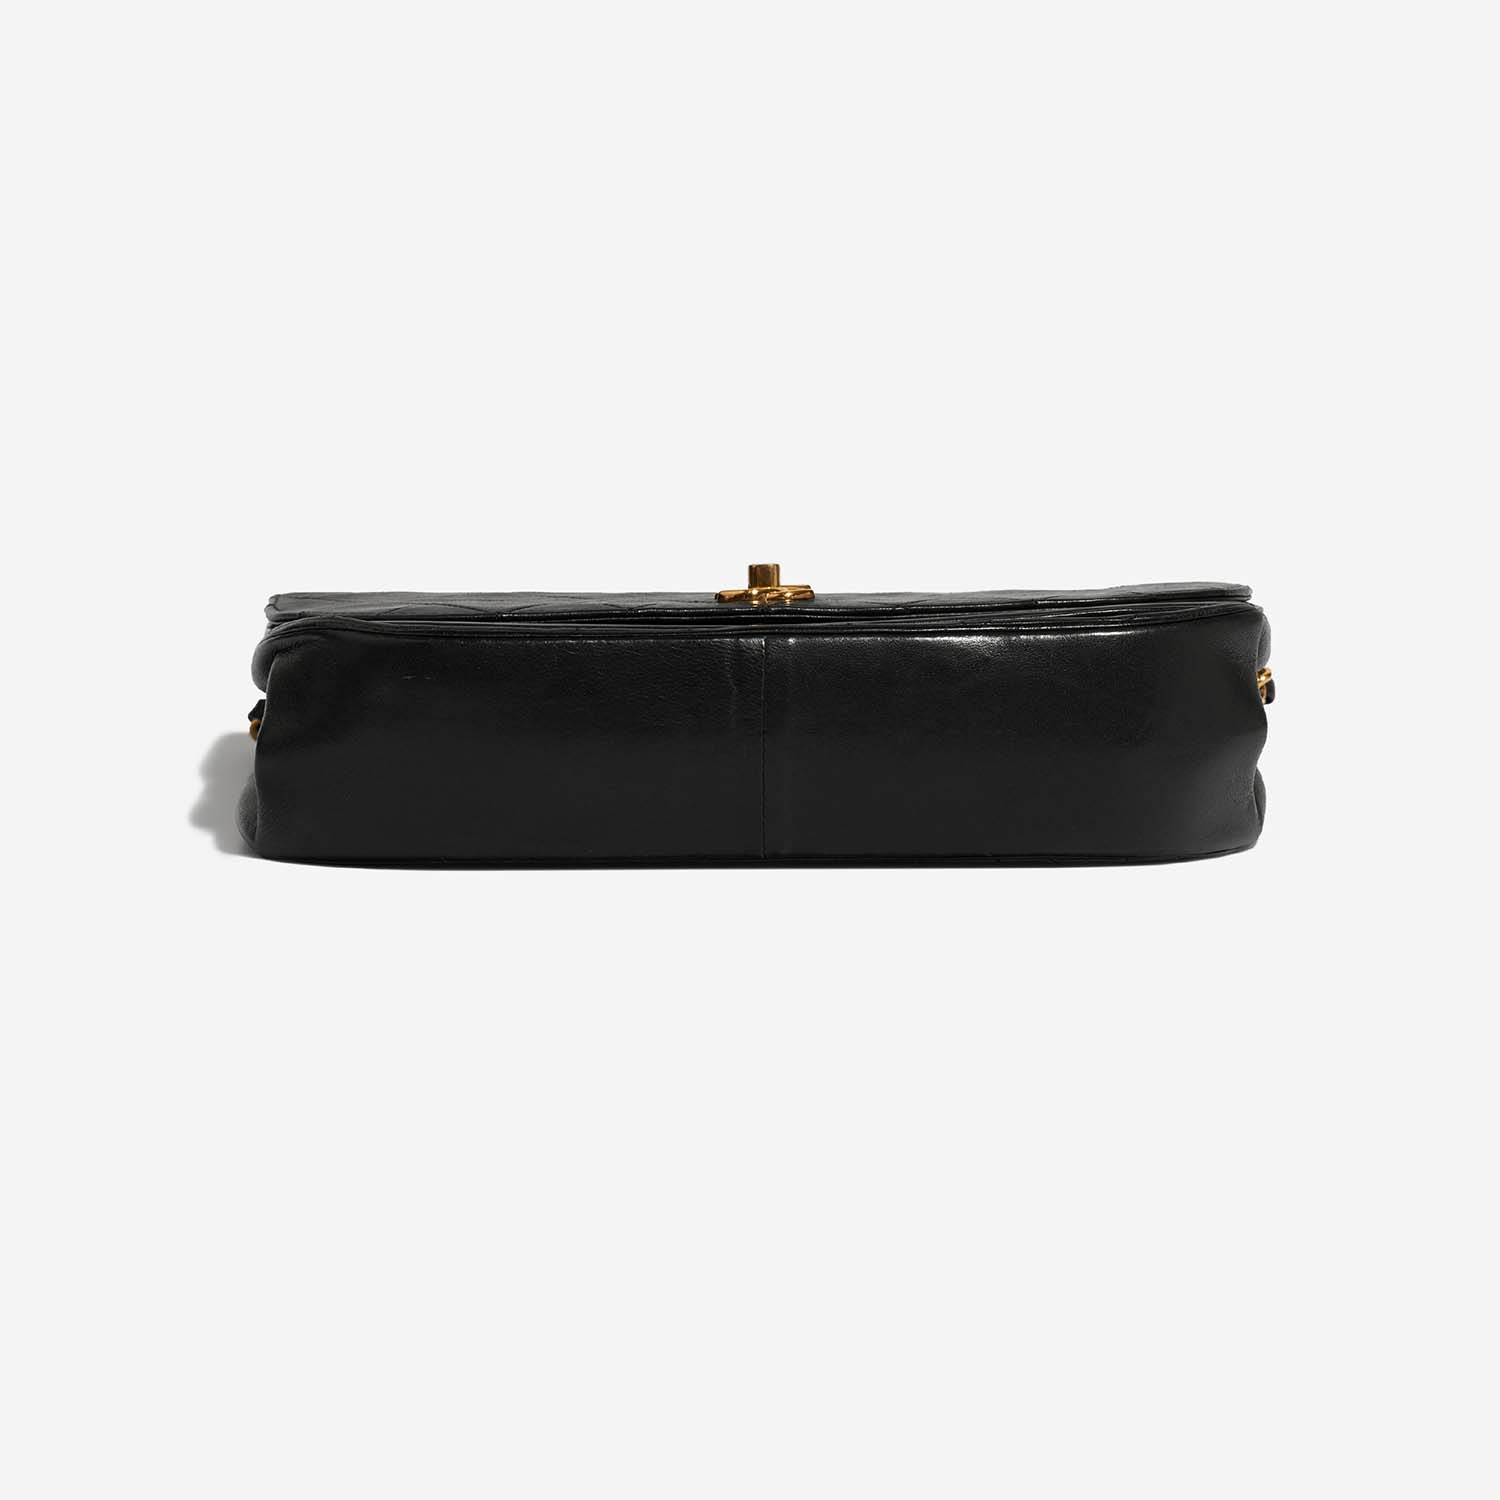 Chanel Timeless DoubleFlap Black Bottom | Verkaufen Sie Ihre Designer-Tasche auf Saclab.com